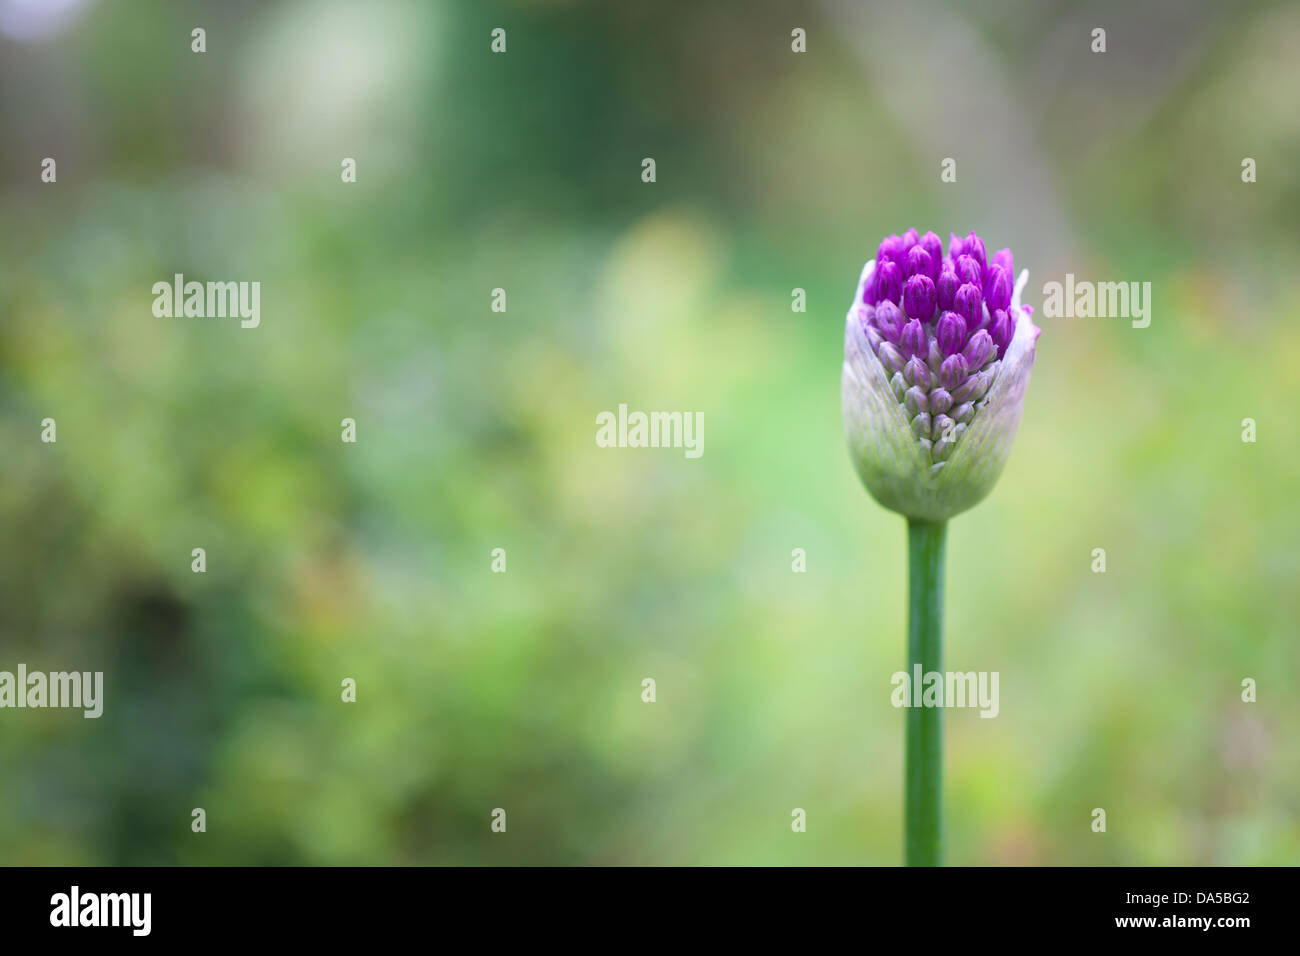 Allium purple flower head 'Drumstick Allium' opening Stock Photo